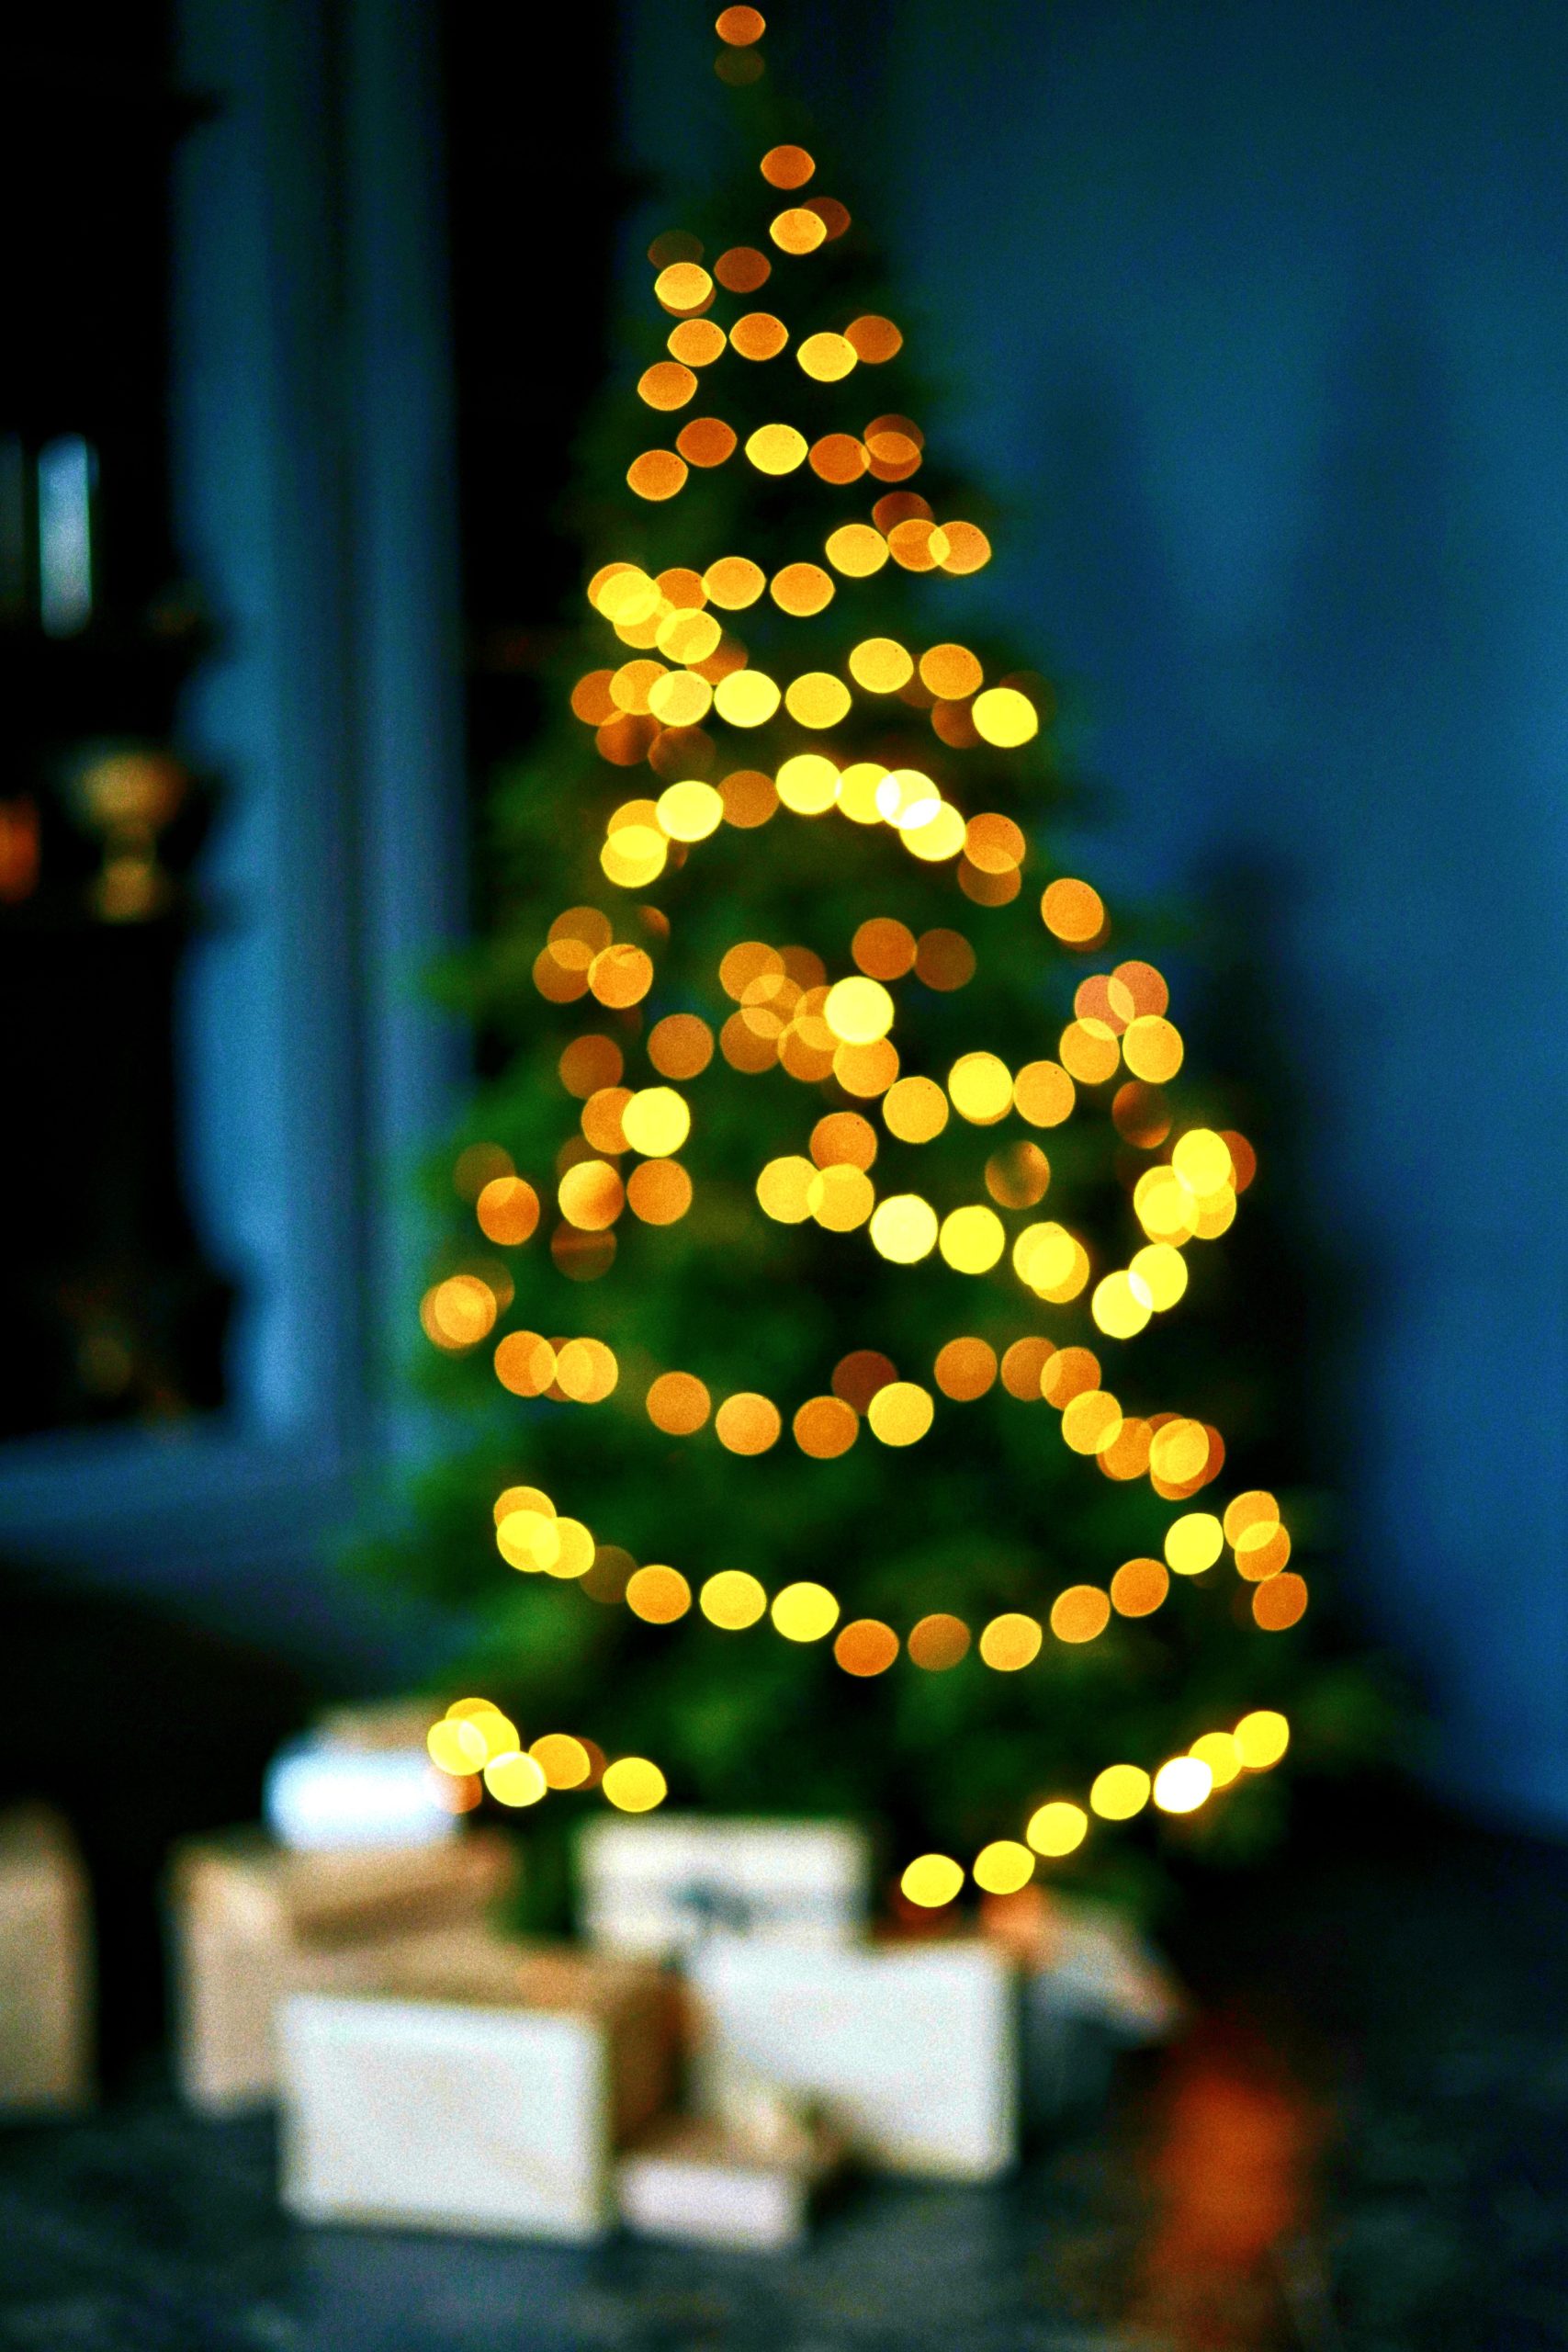 <img src="christmas.jpg" alt="christmas tree with lights"/> 